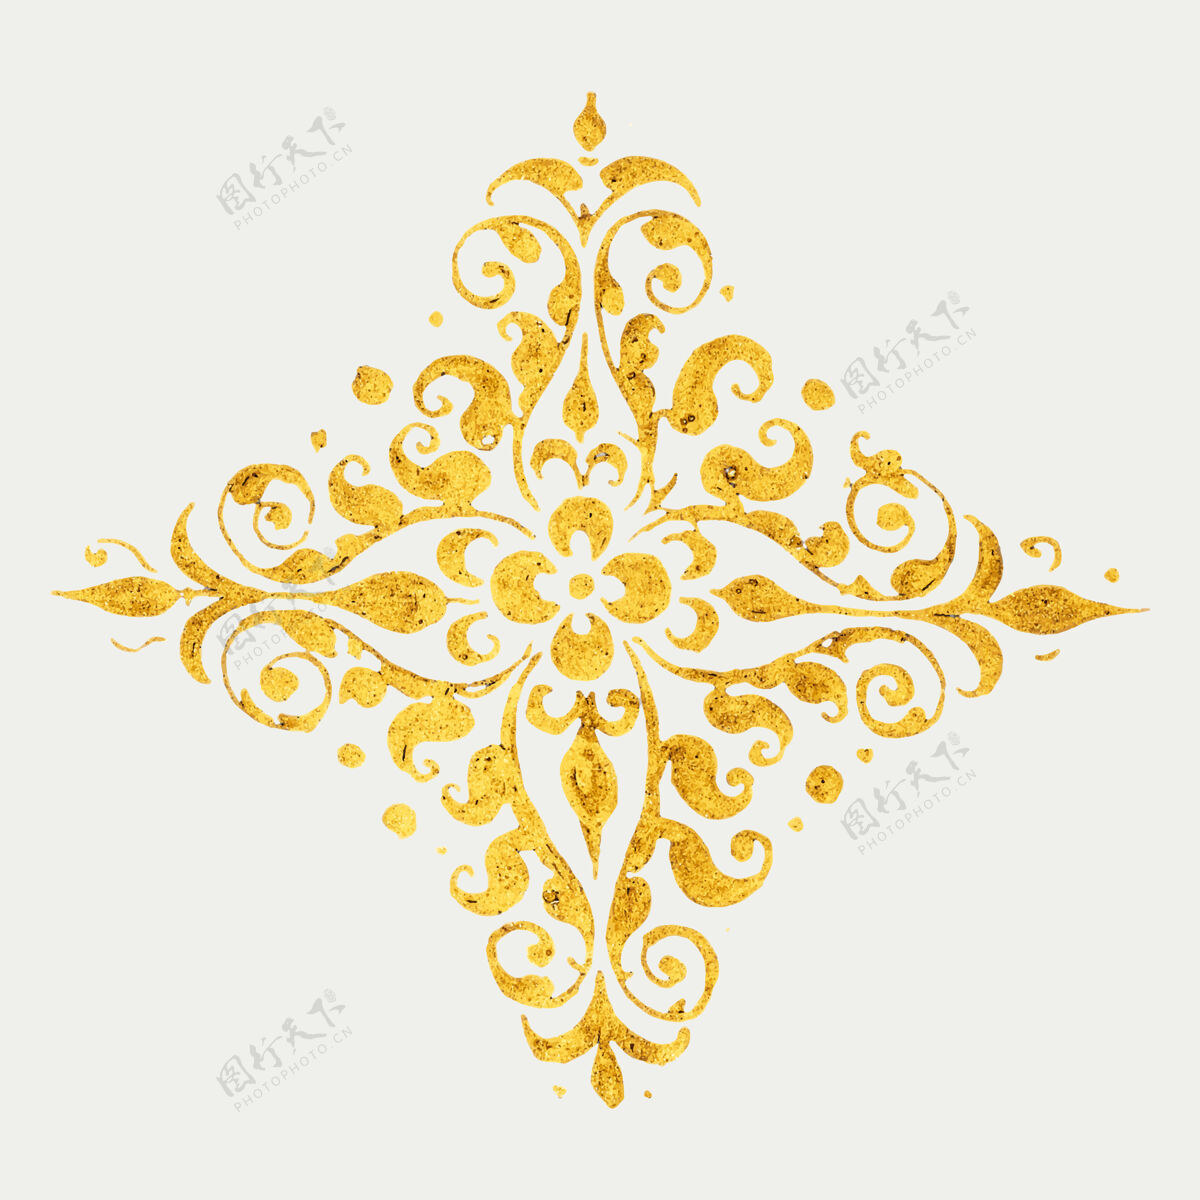 维多利亚中世纪金色徽章旧闪光标志